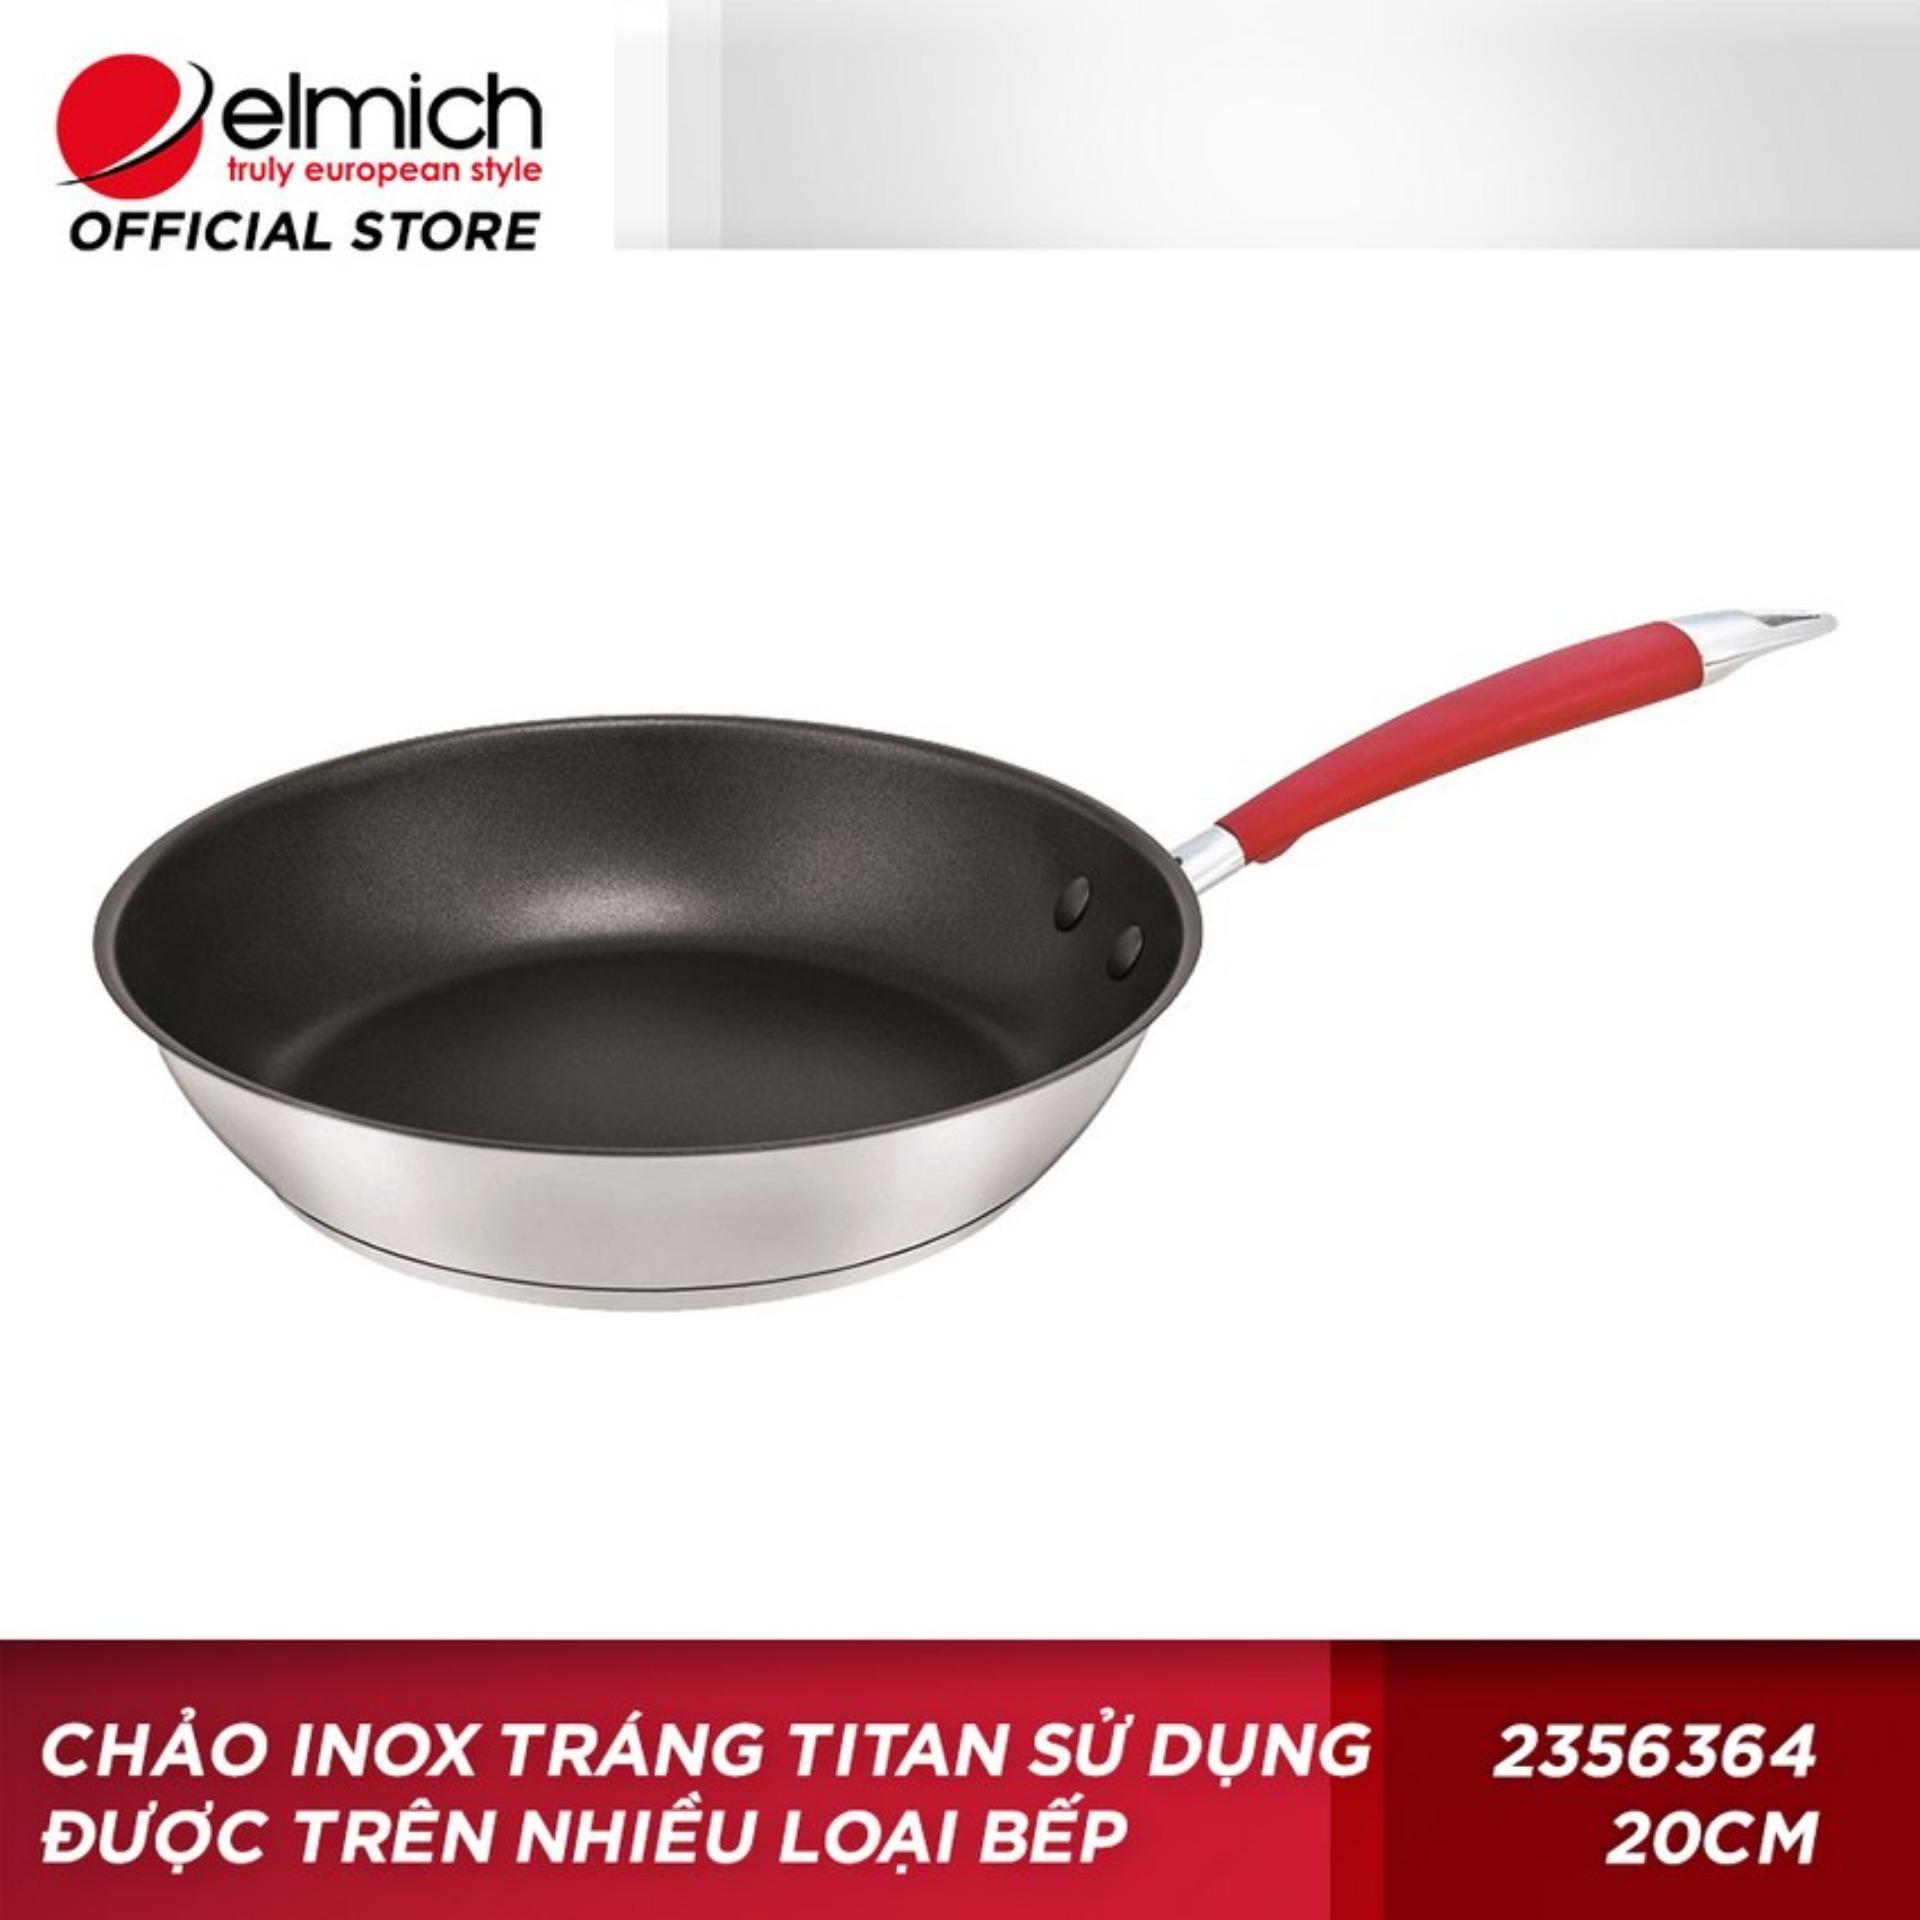 Chảo inox tráng Titan sử dụng được trên nhiều loại bếp Elmich-2356364 20cm (Bạc)